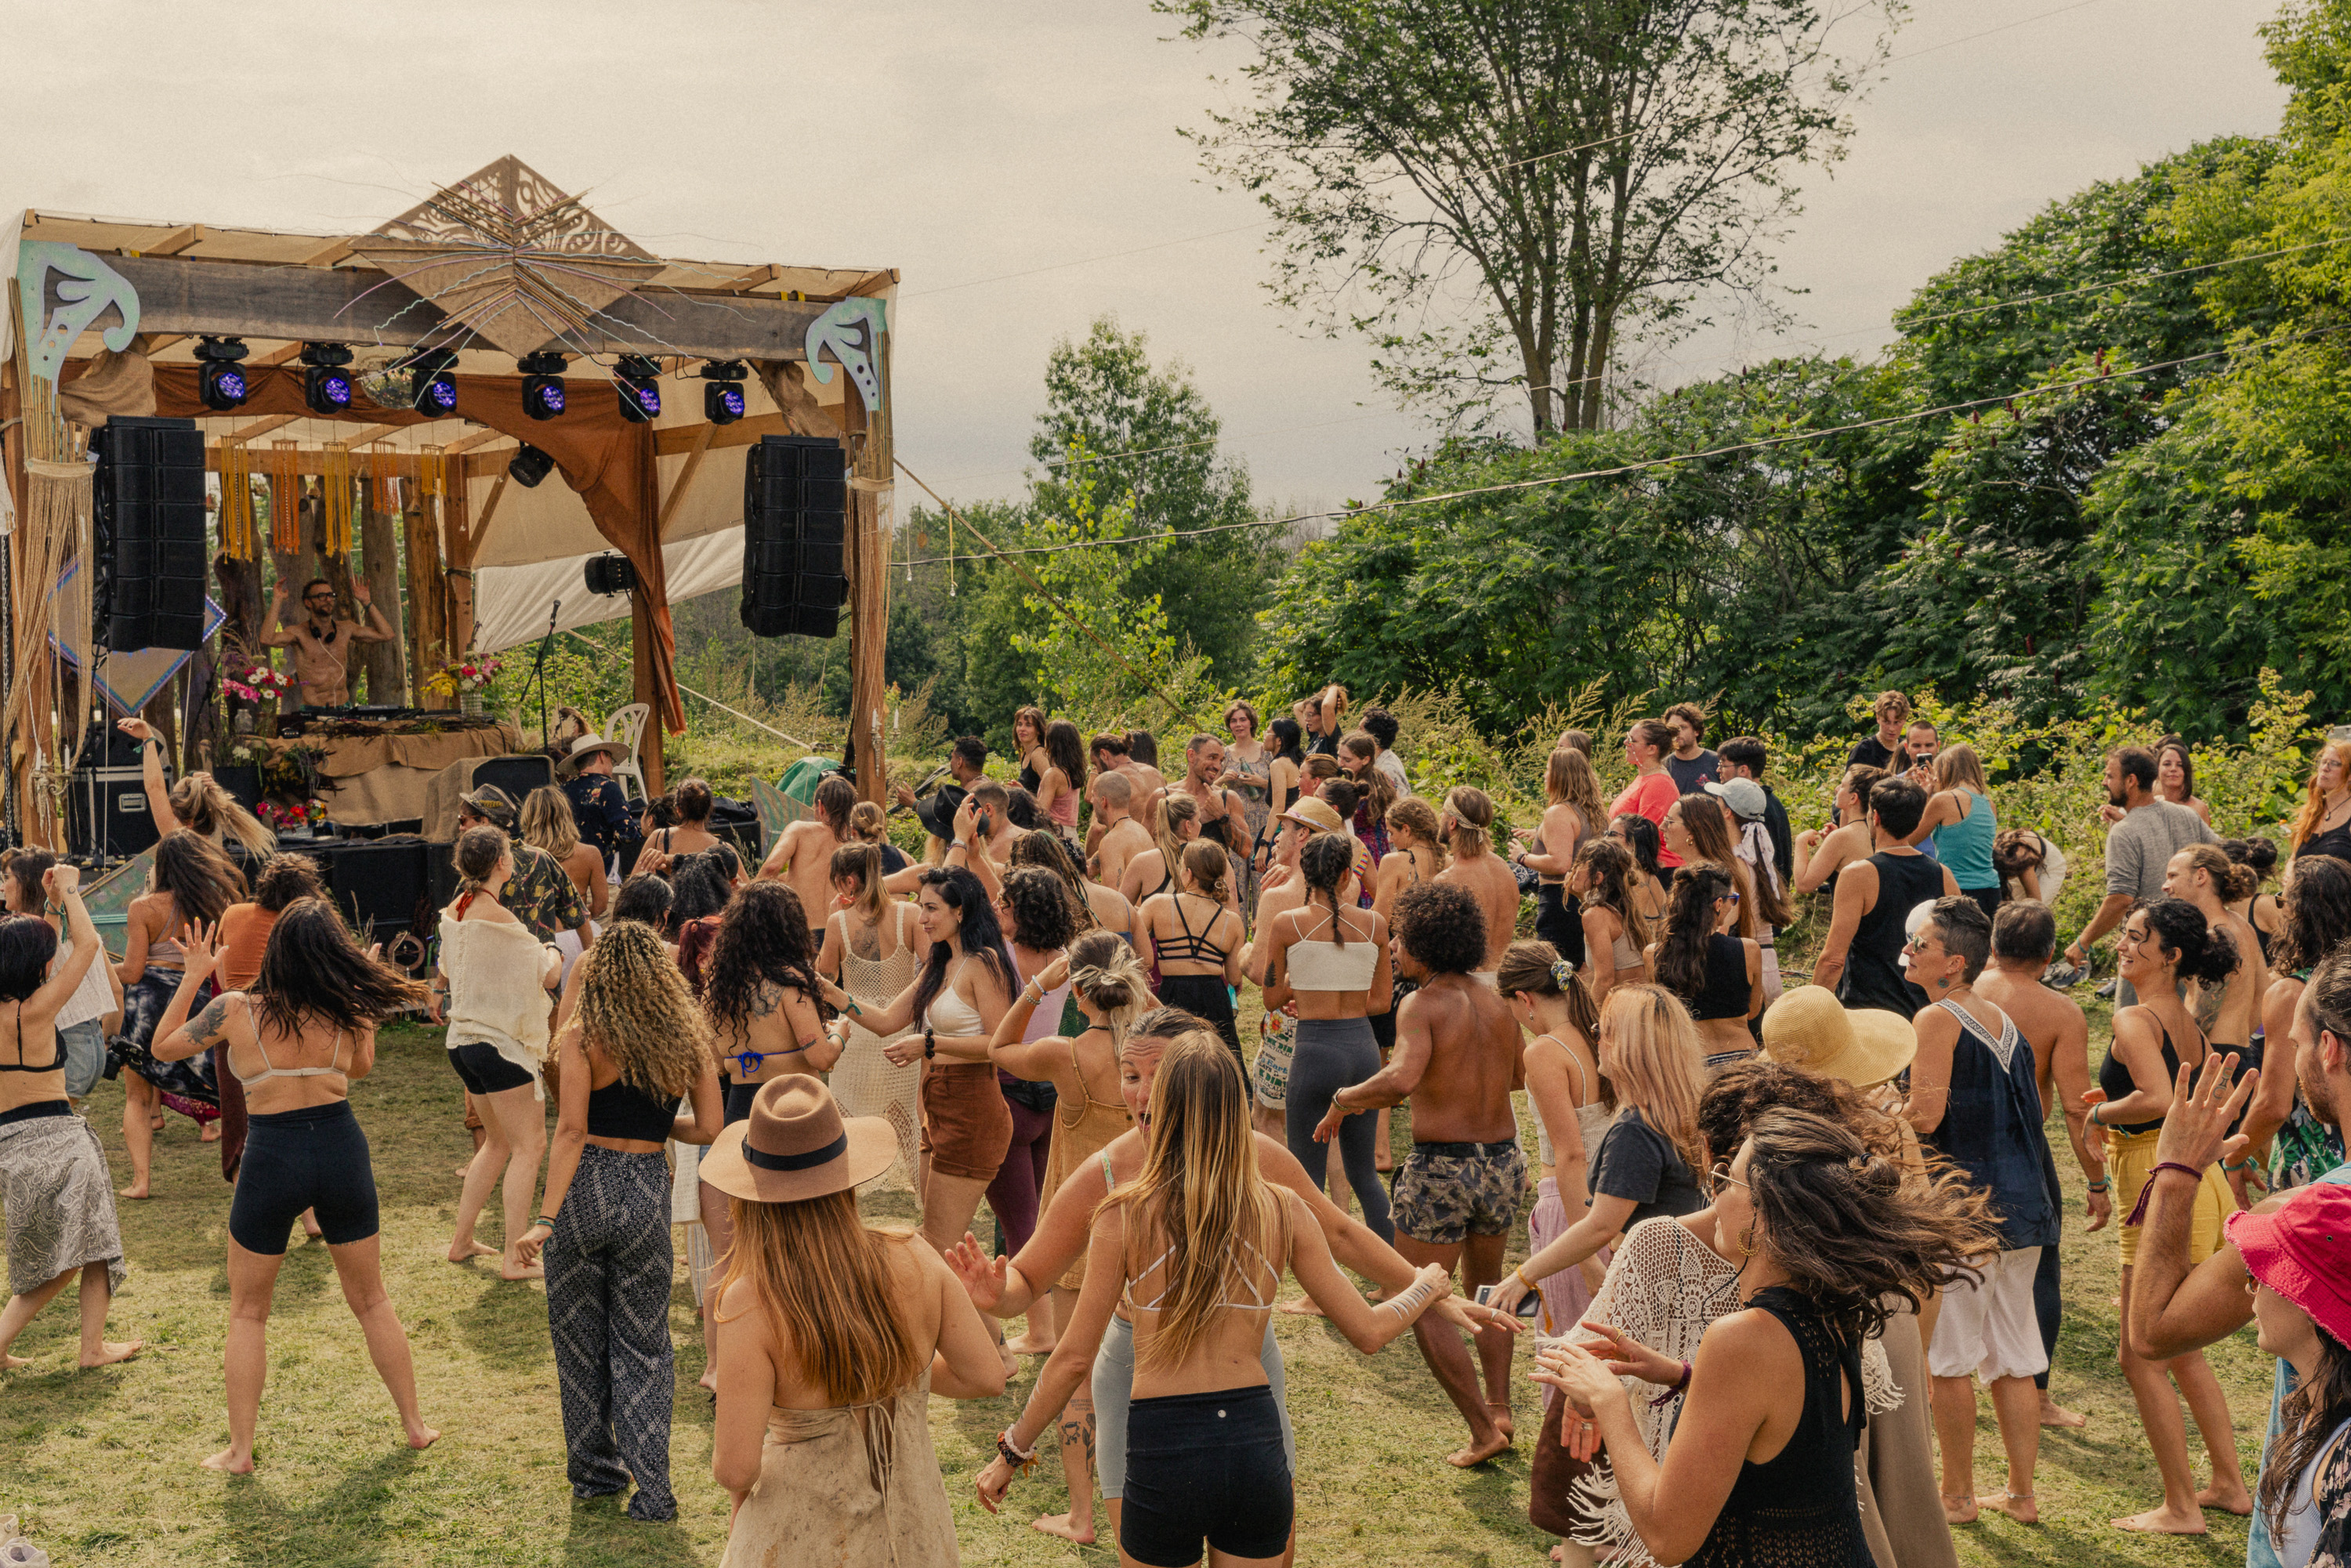 Une foule de jeunes danseurs sur une piste de danse extérieur durant un événement estival devant une scène comportant un DJ booth, des haut-parleurs superposés et l'équipement d'éclairage en pleine nature